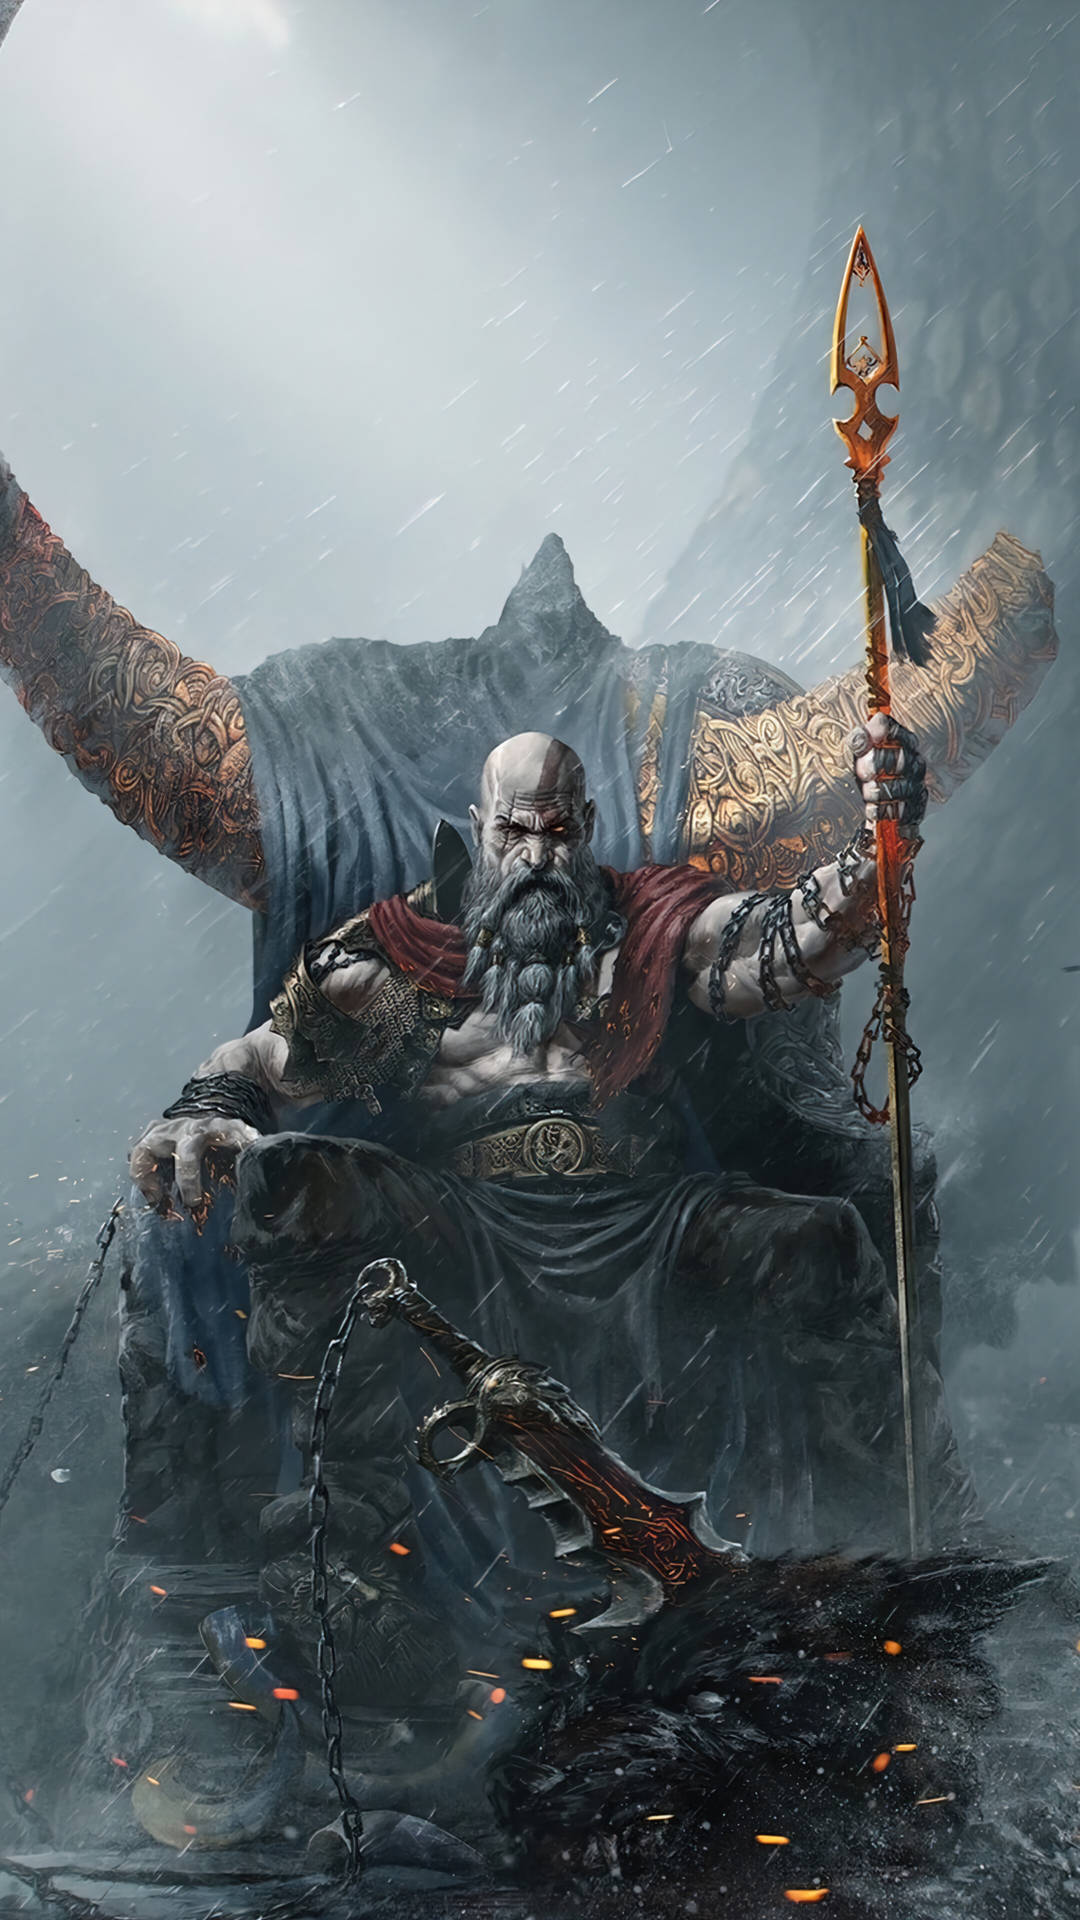 God of War Kratos wallpaper  1920x1080  328727  WallpaperUP